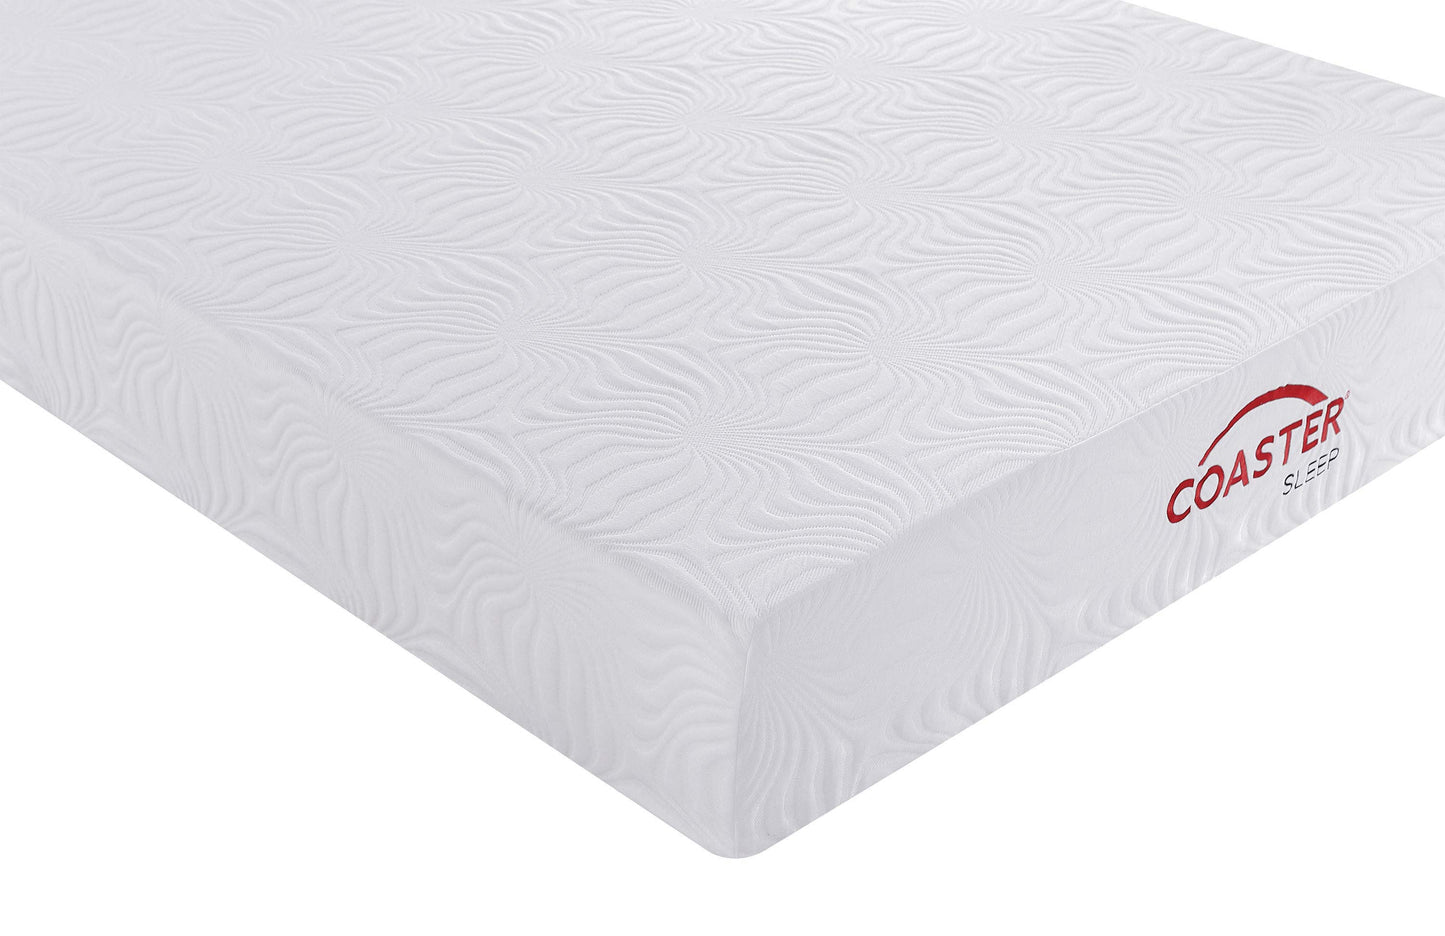 10" queen memory foam mattress